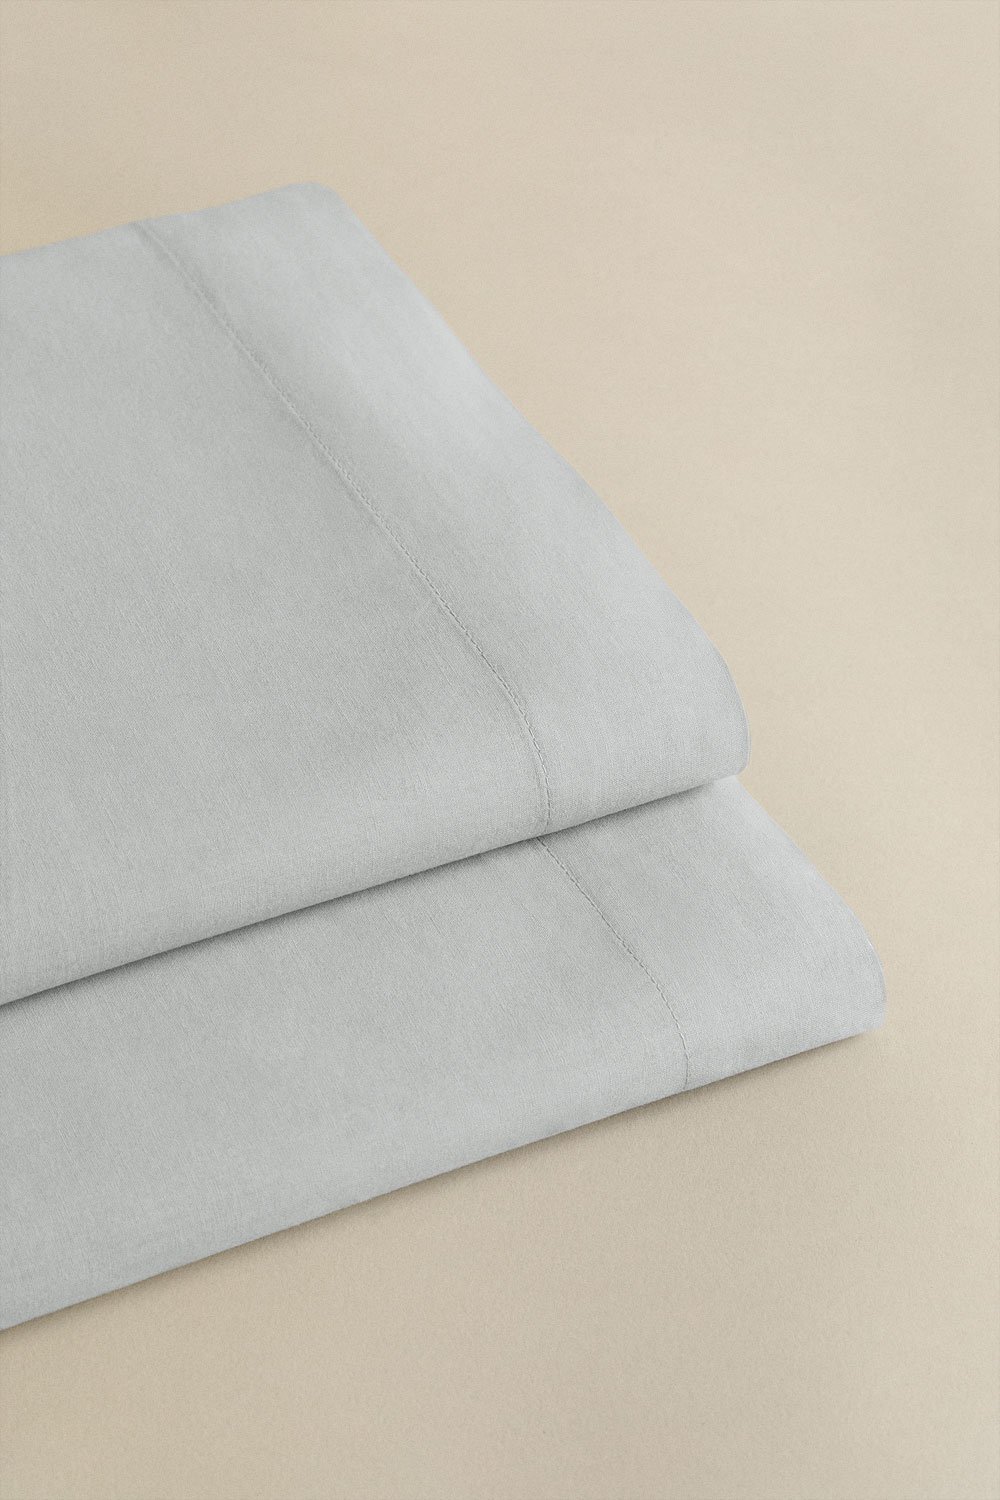 Bettlaken aus Perkal-Baumwolle, Fadenzahl 180, für Bett Agassi mit einer Breite von 90 cm, Galeriebild 1